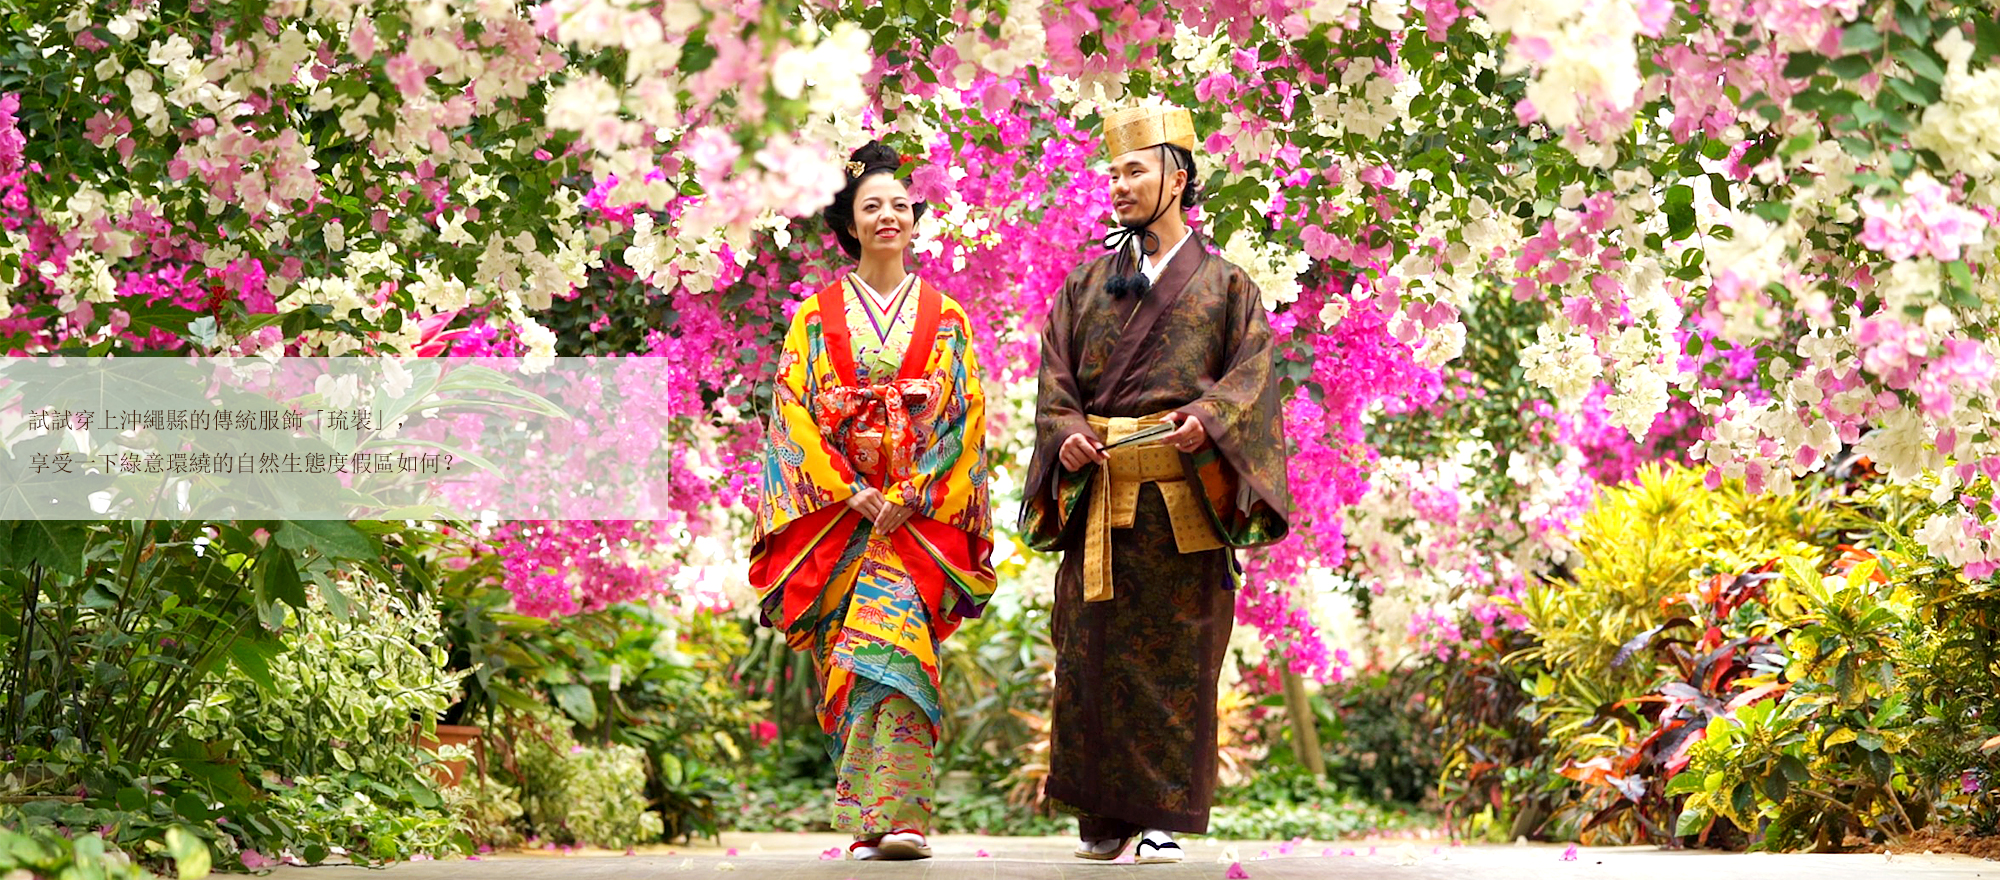 試試穿上沖繩縣的傳統服飾「琉裝」，享受一下綠意環繞的自然生態度假區如何？為大家走訪宮古島的人氣景點，介紹南國僅有的度假勝地婚禮。